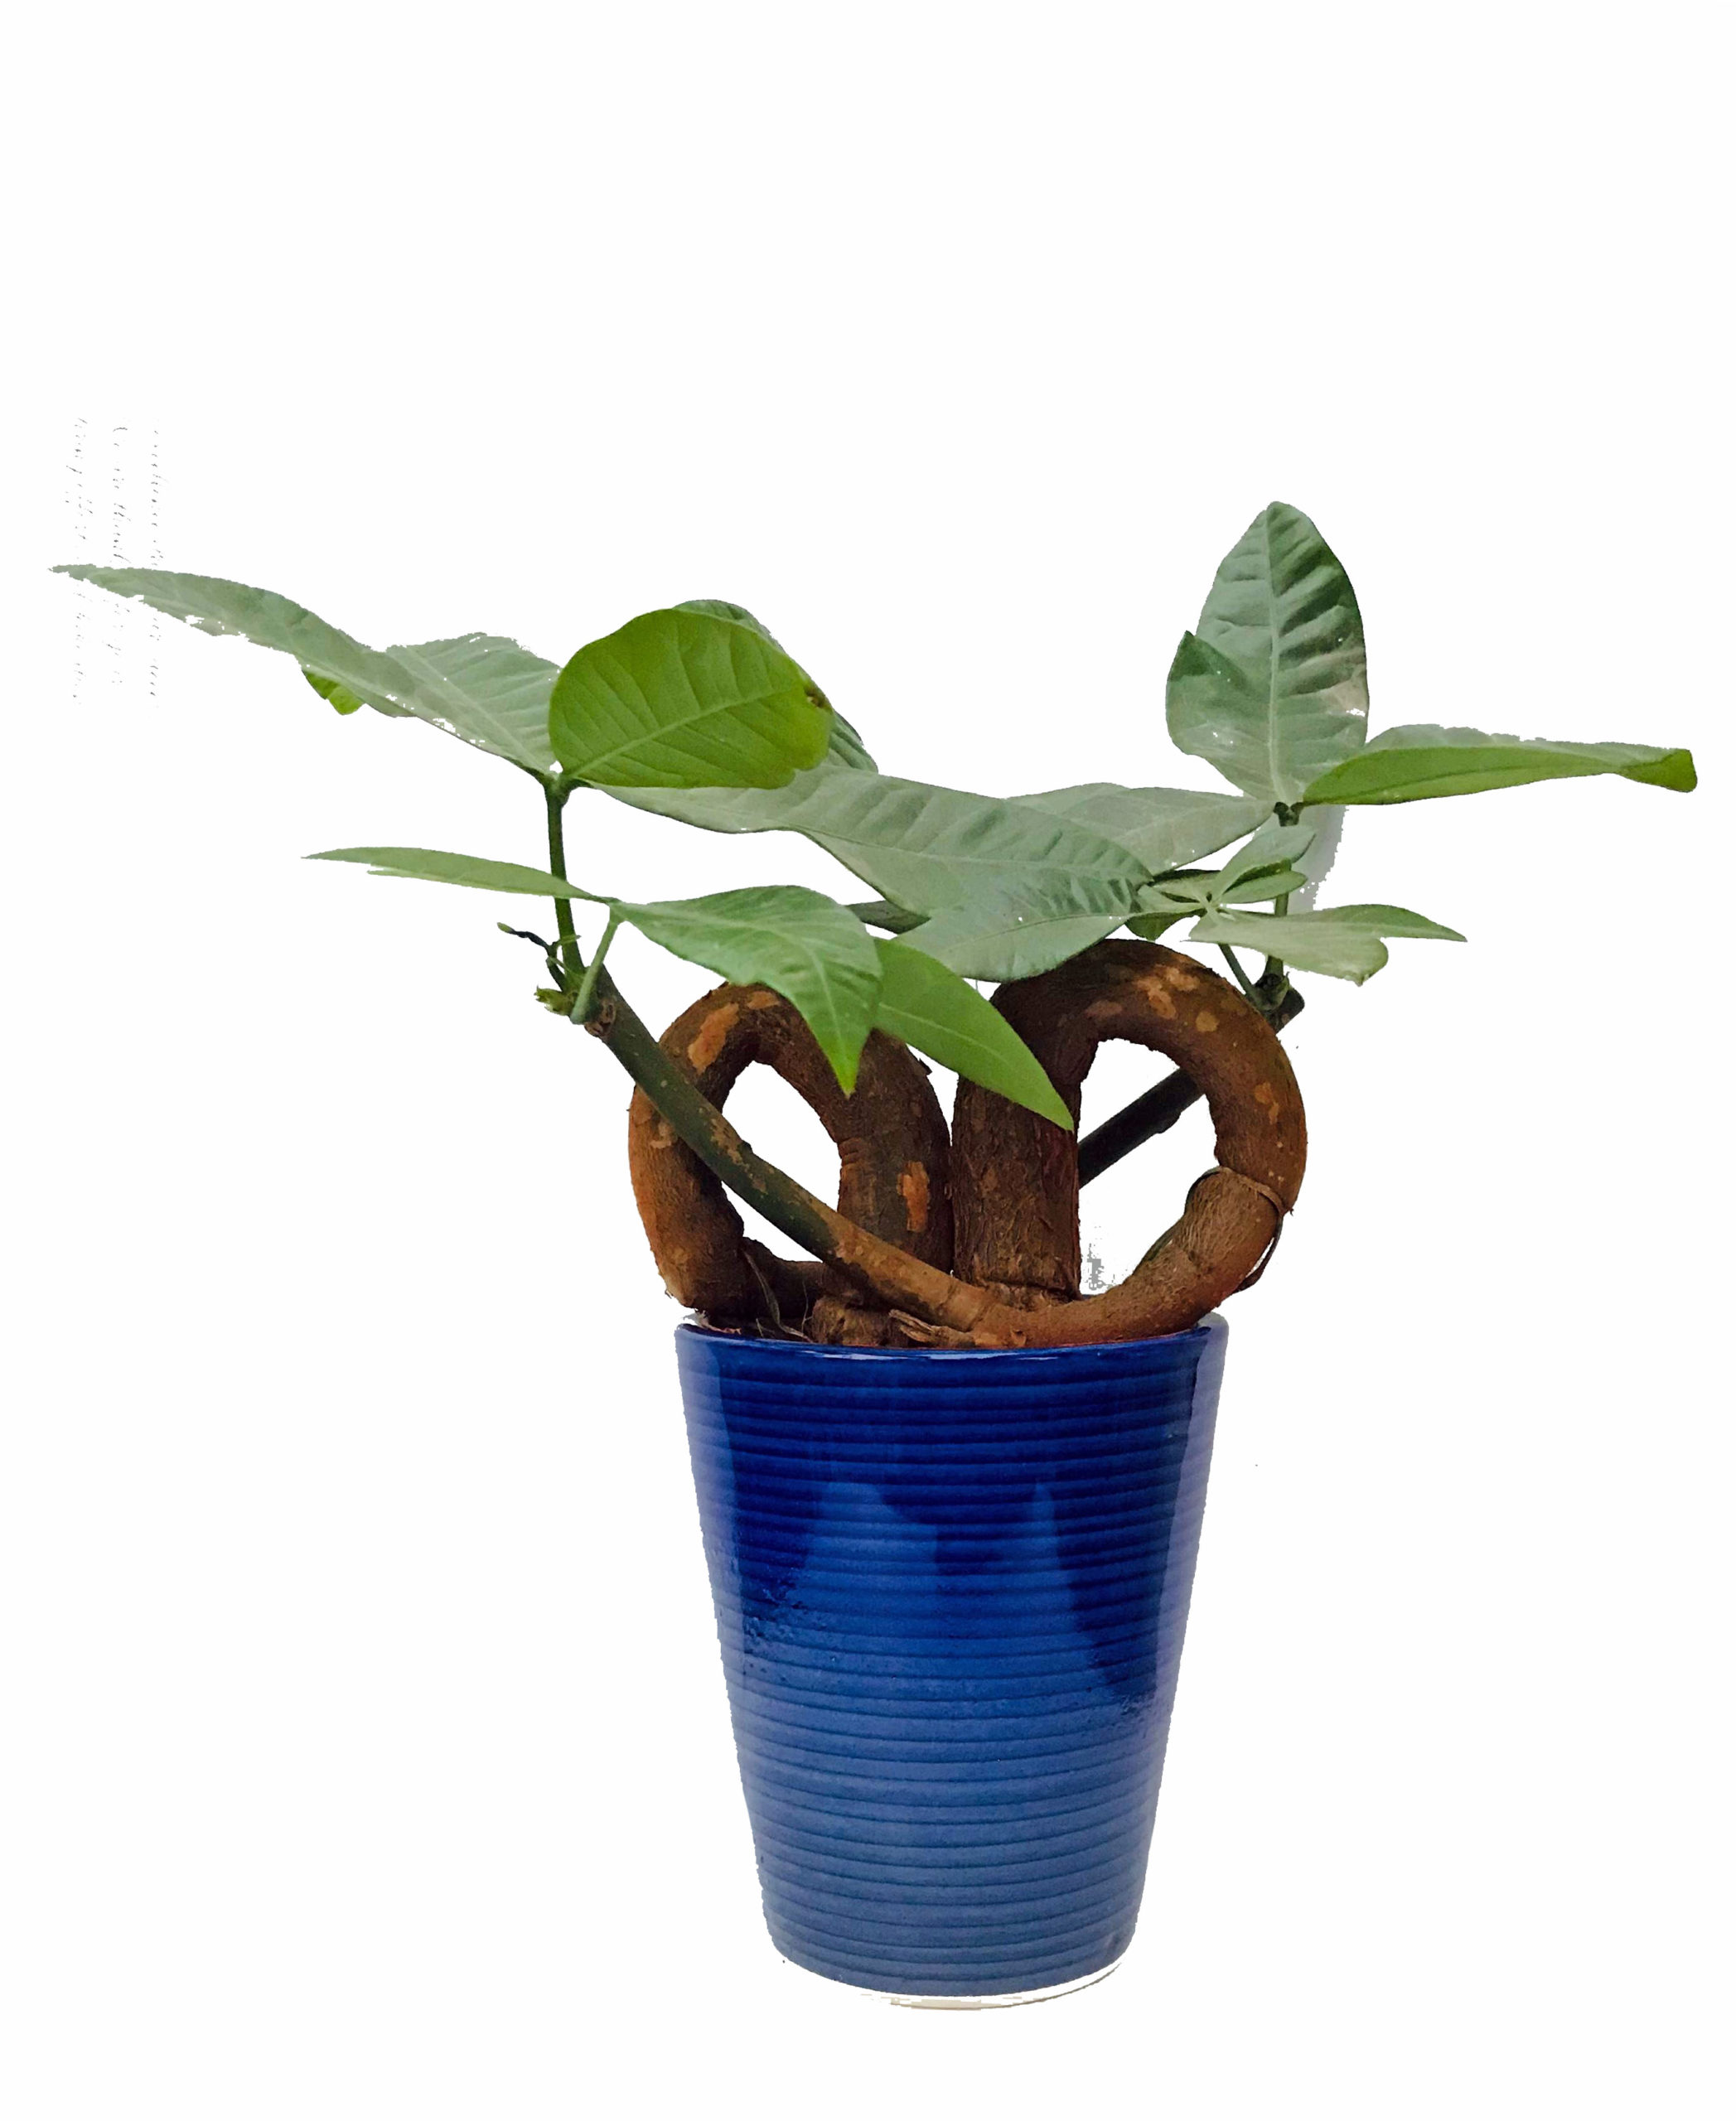 pachira money tree plant